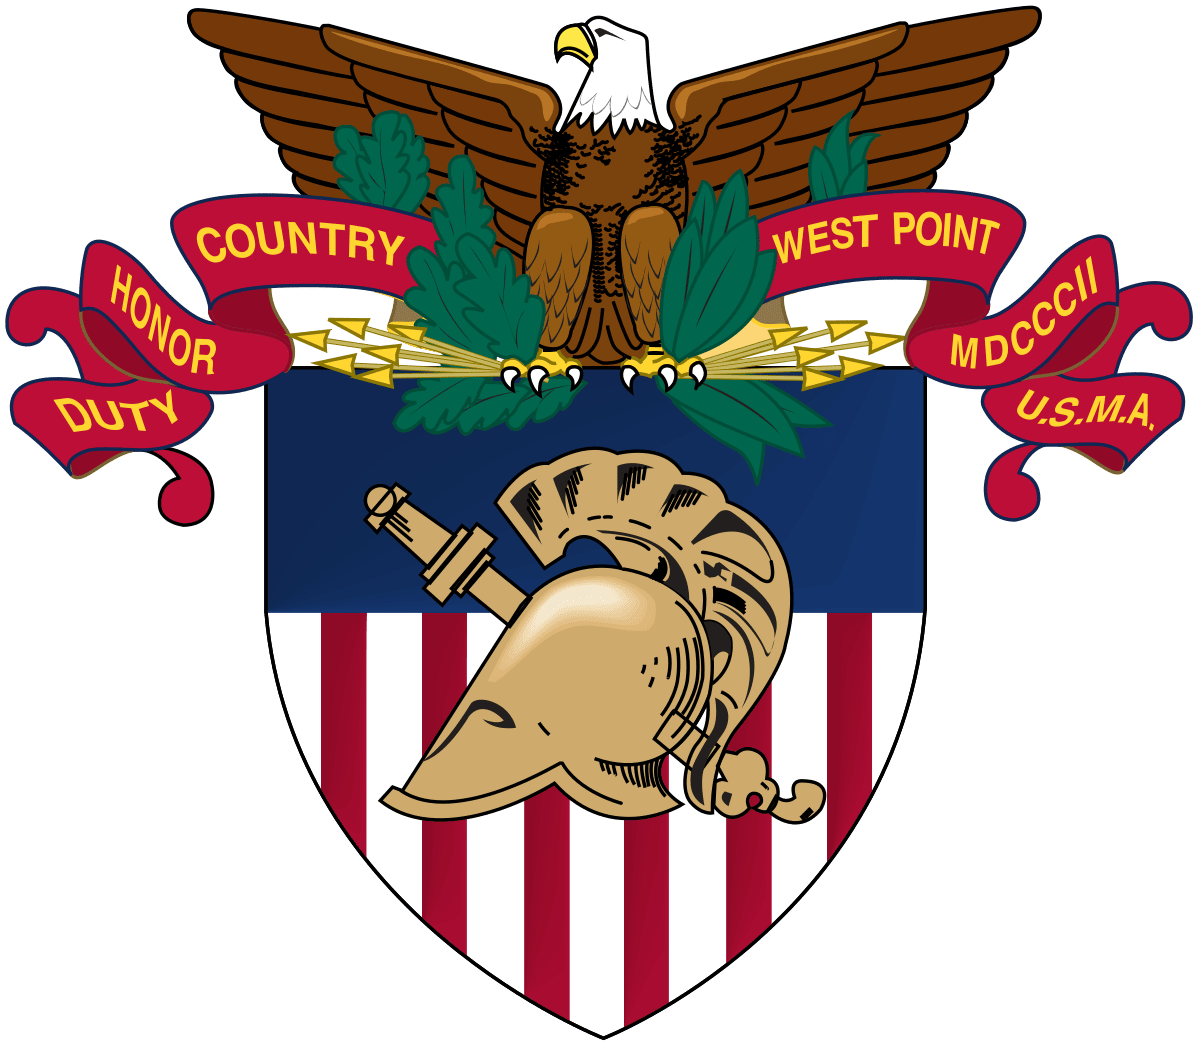 United States Marine Academy